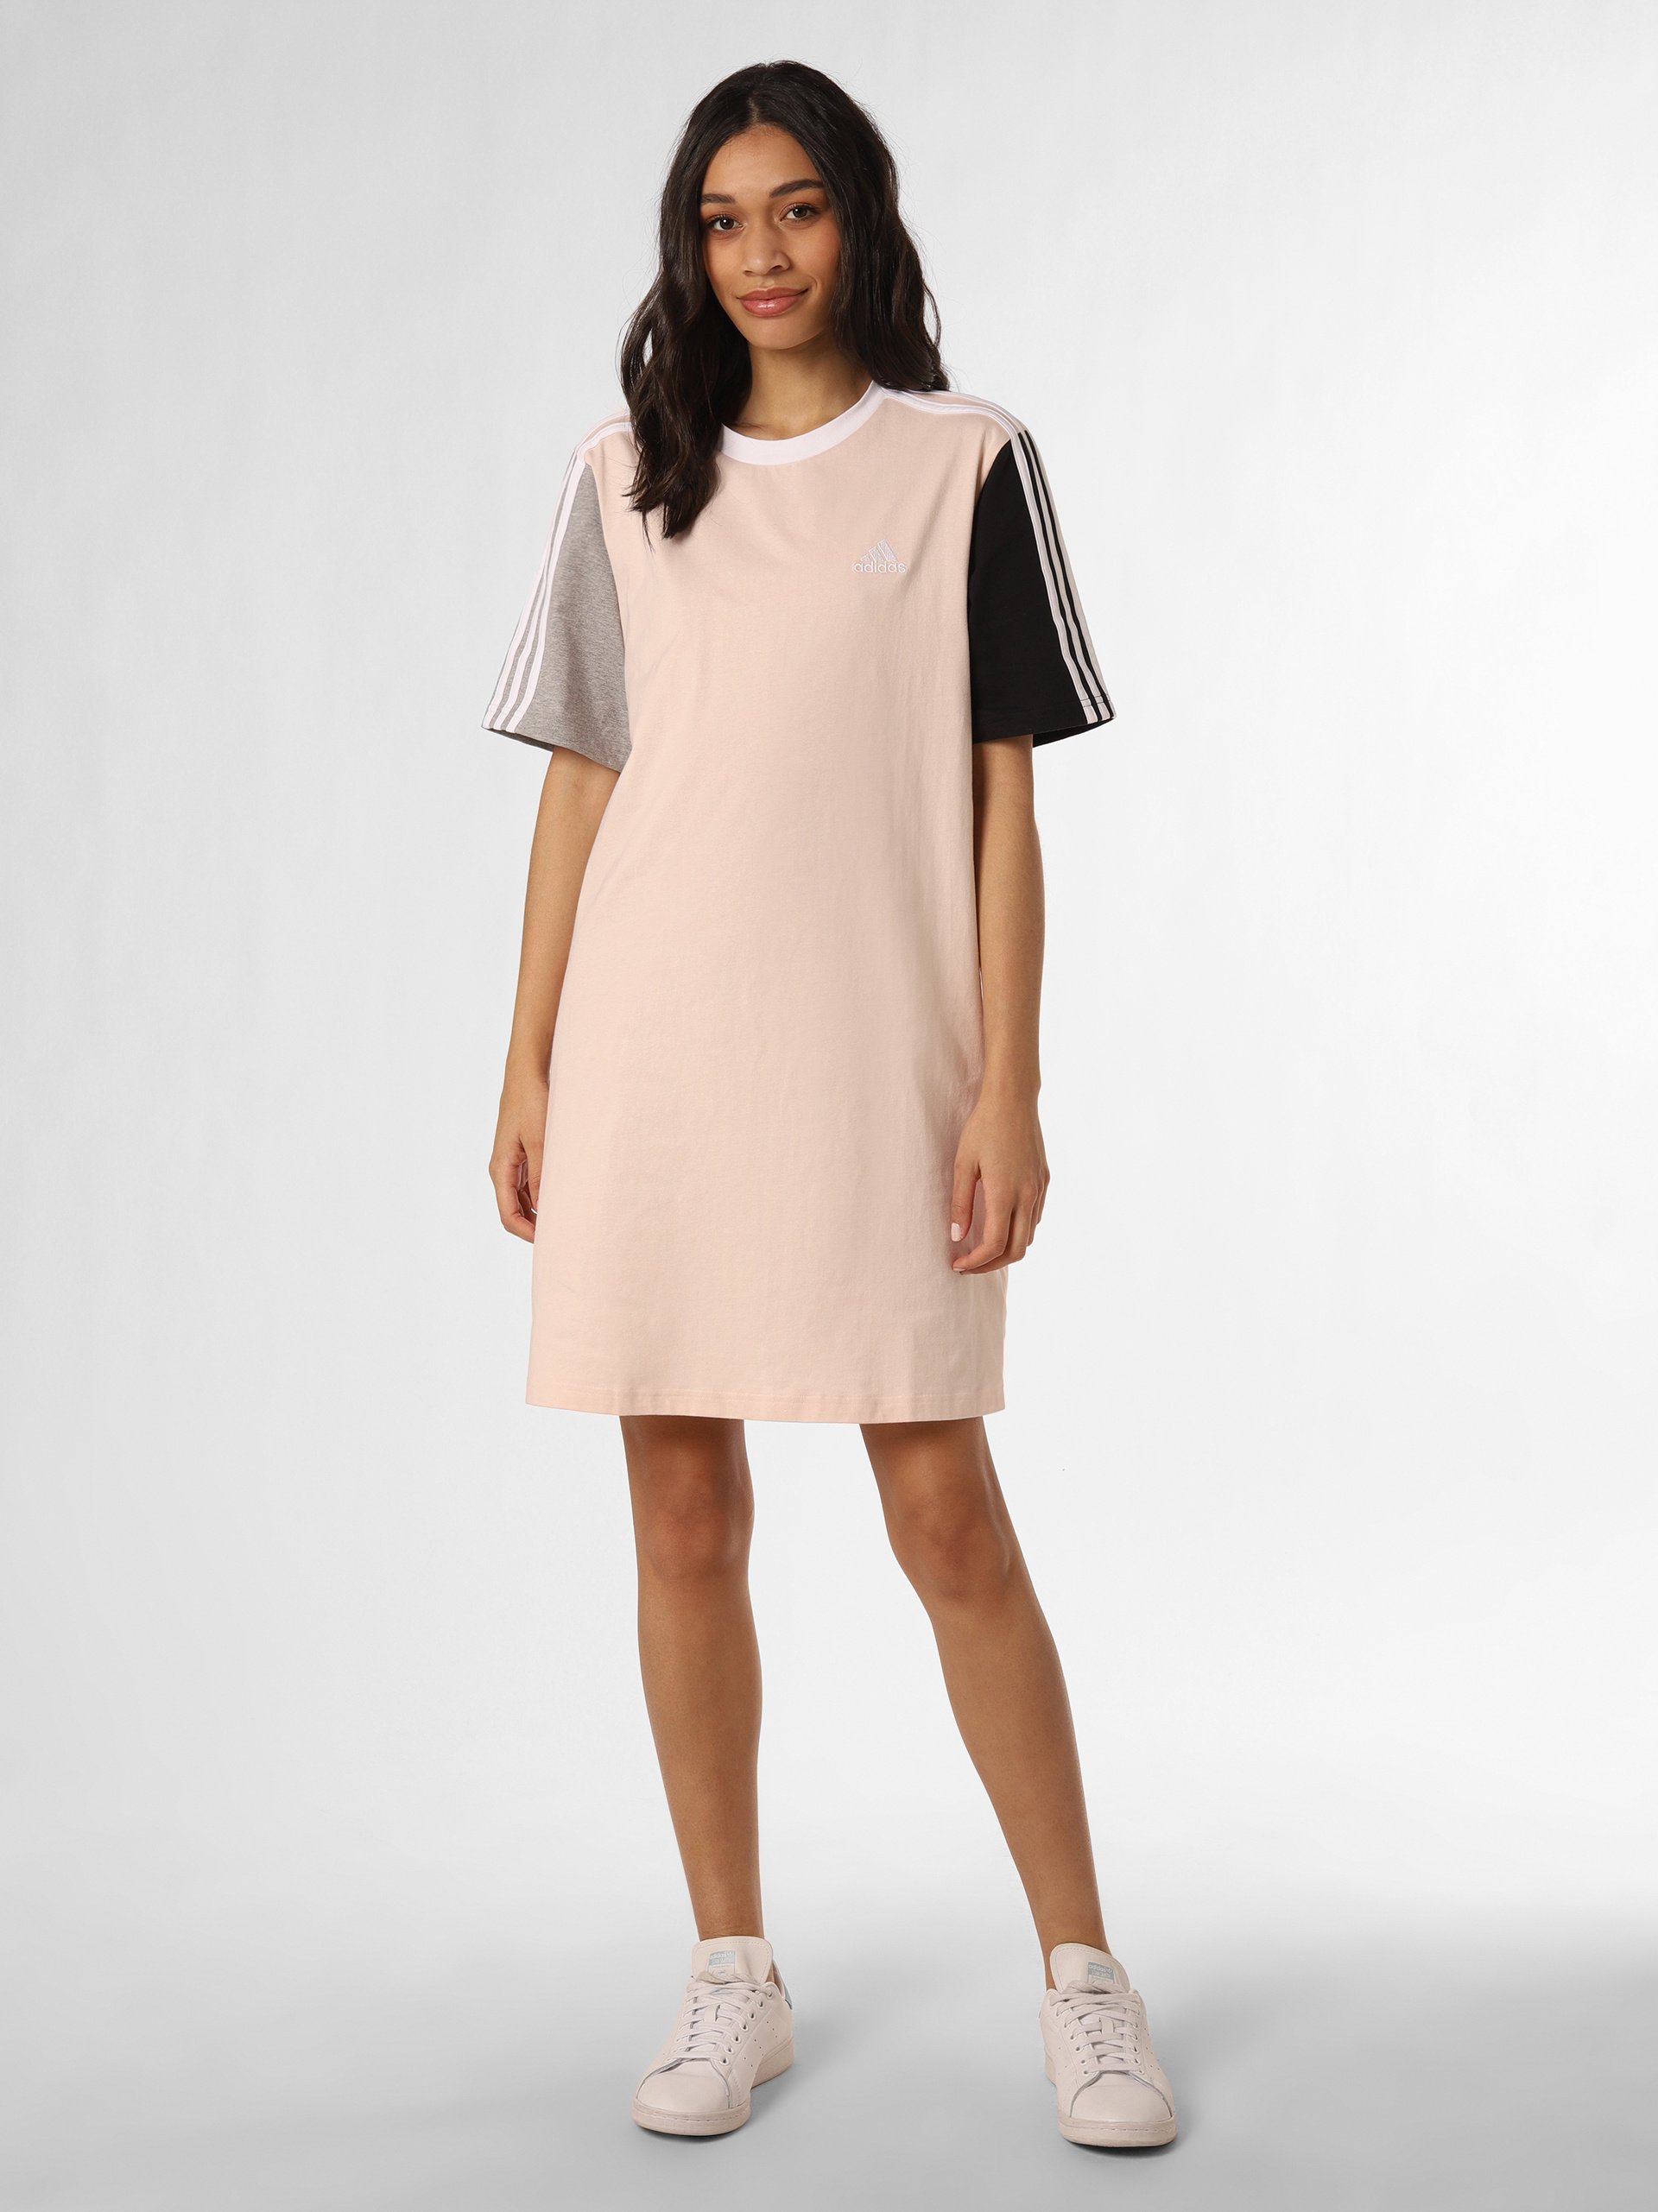 adidas Sportswear Damen Kleid online kaufen VANGRAAF